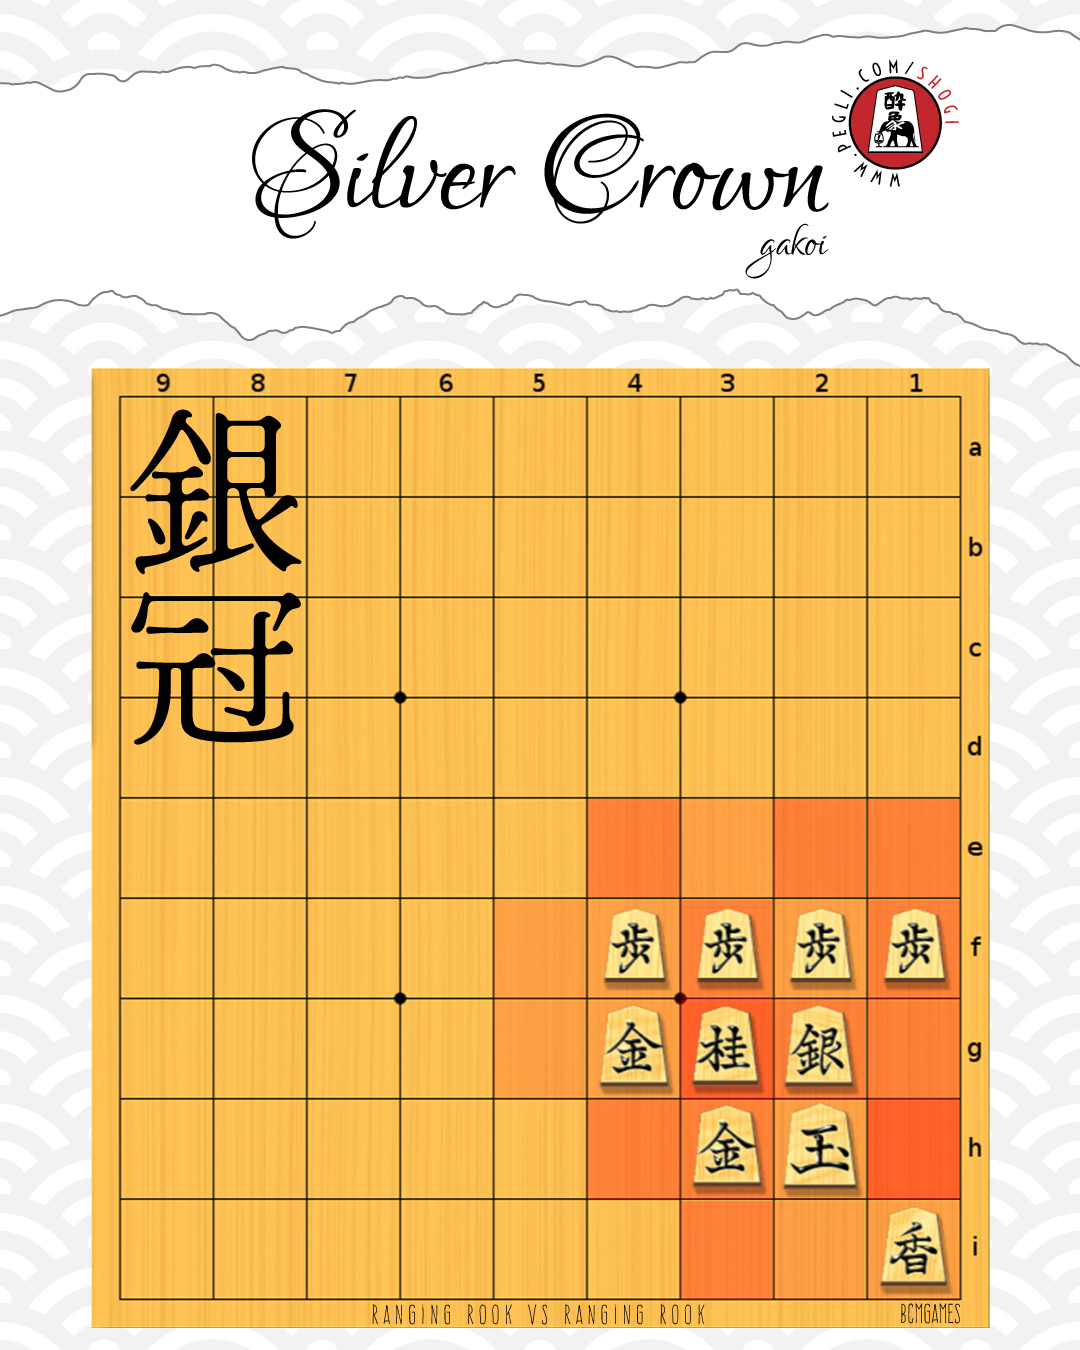 shogi - kakoi: silver crown gakoi